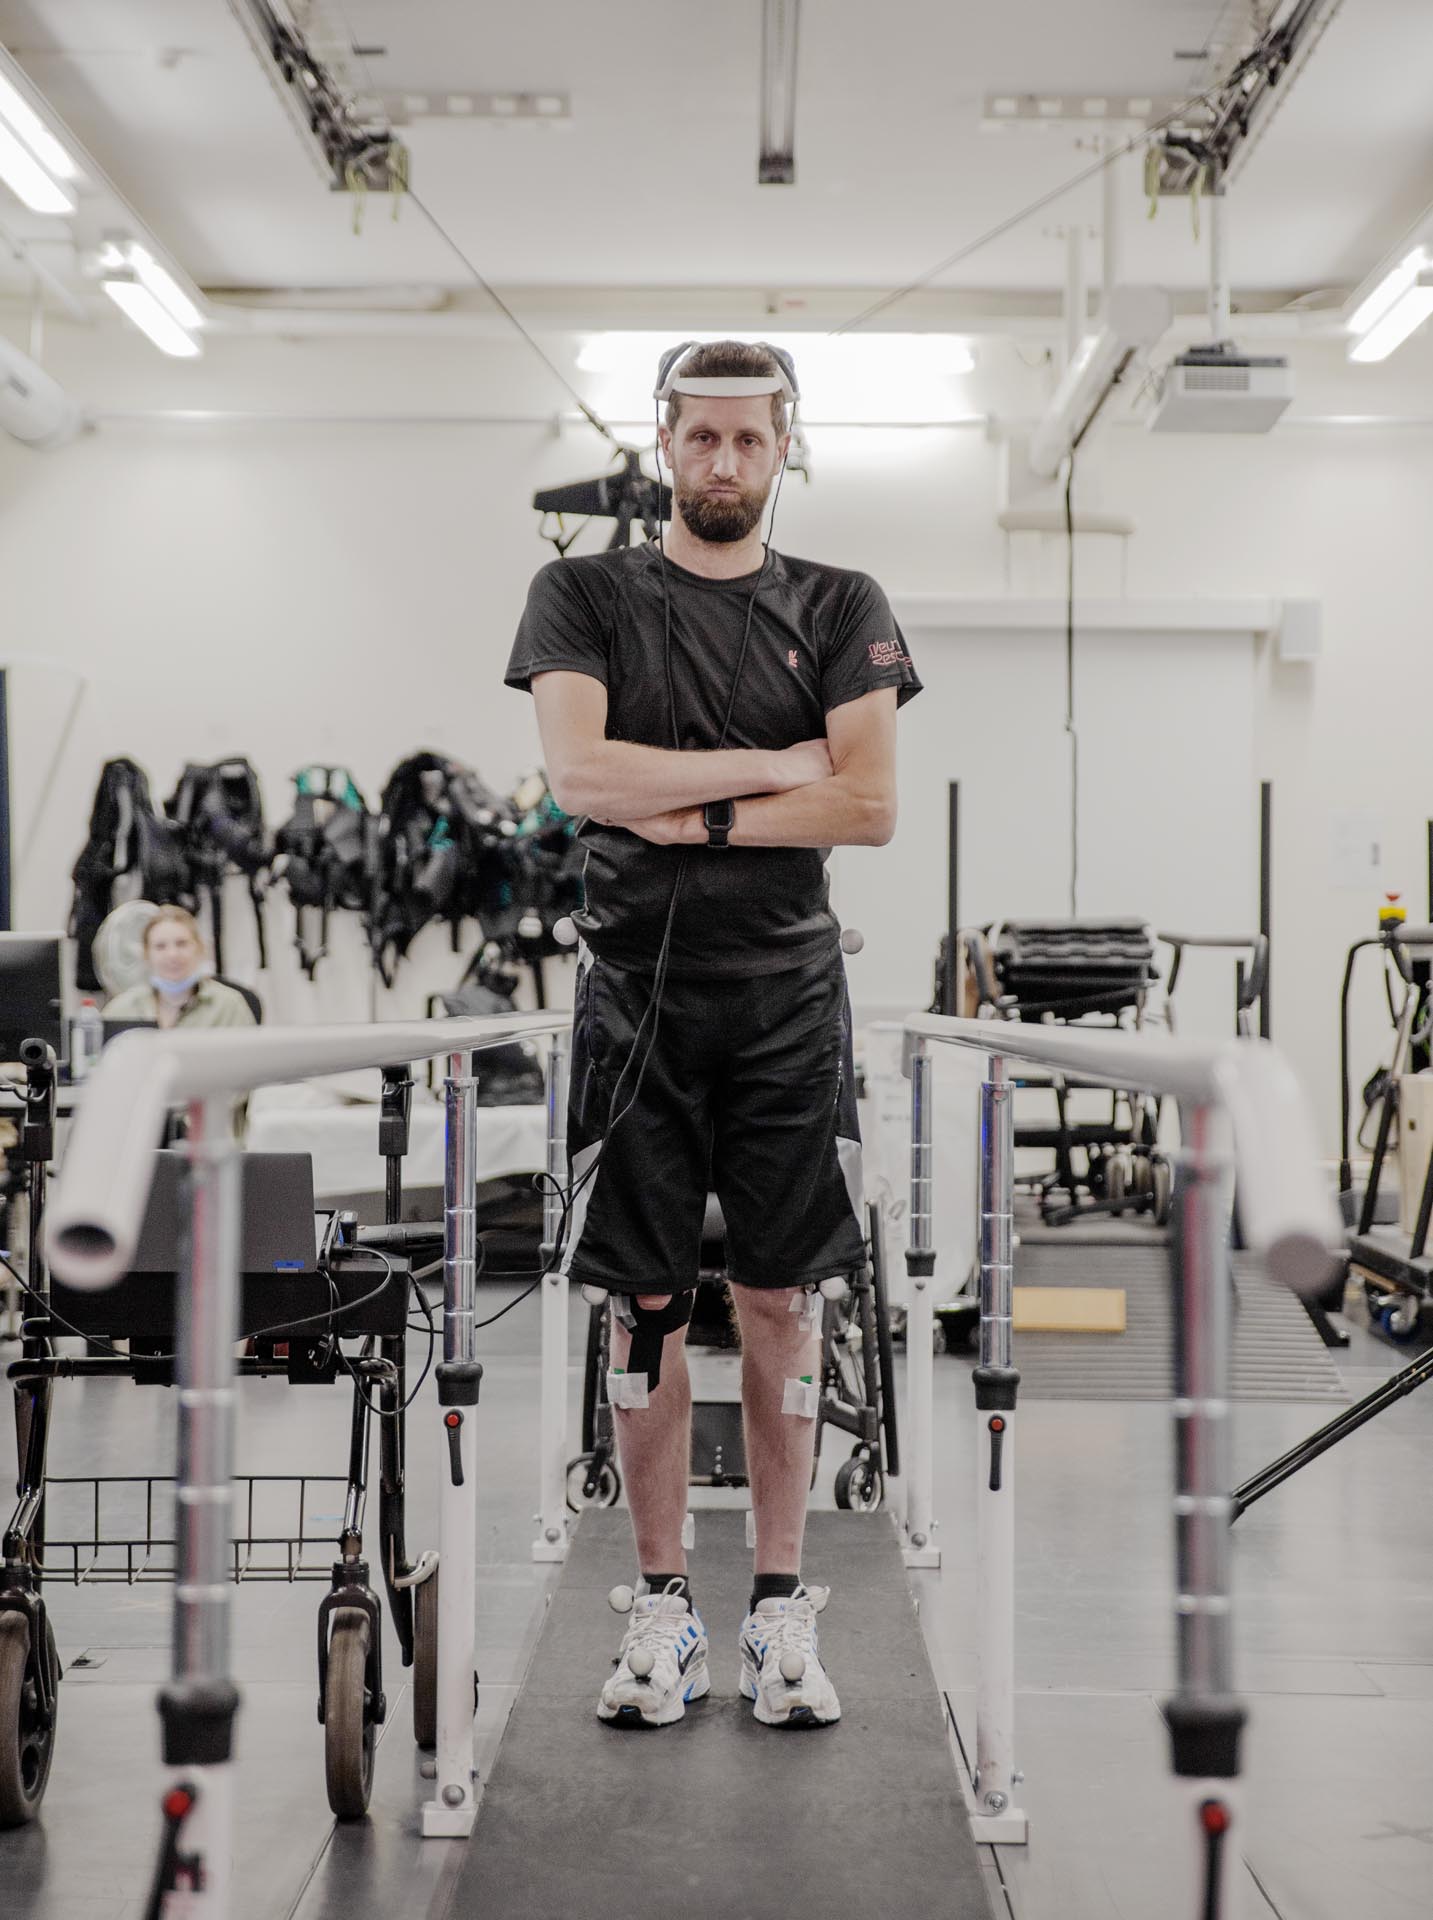 El "puente digital" le permitó al hombre tetrapléjico recuperar el control sobre el movimiento de sus piernas paralizadas, y logró ponerse de pie, caminar e incluso subir escaleras (gentileza Le Centre Hospitalier Universitaire Vaudois )